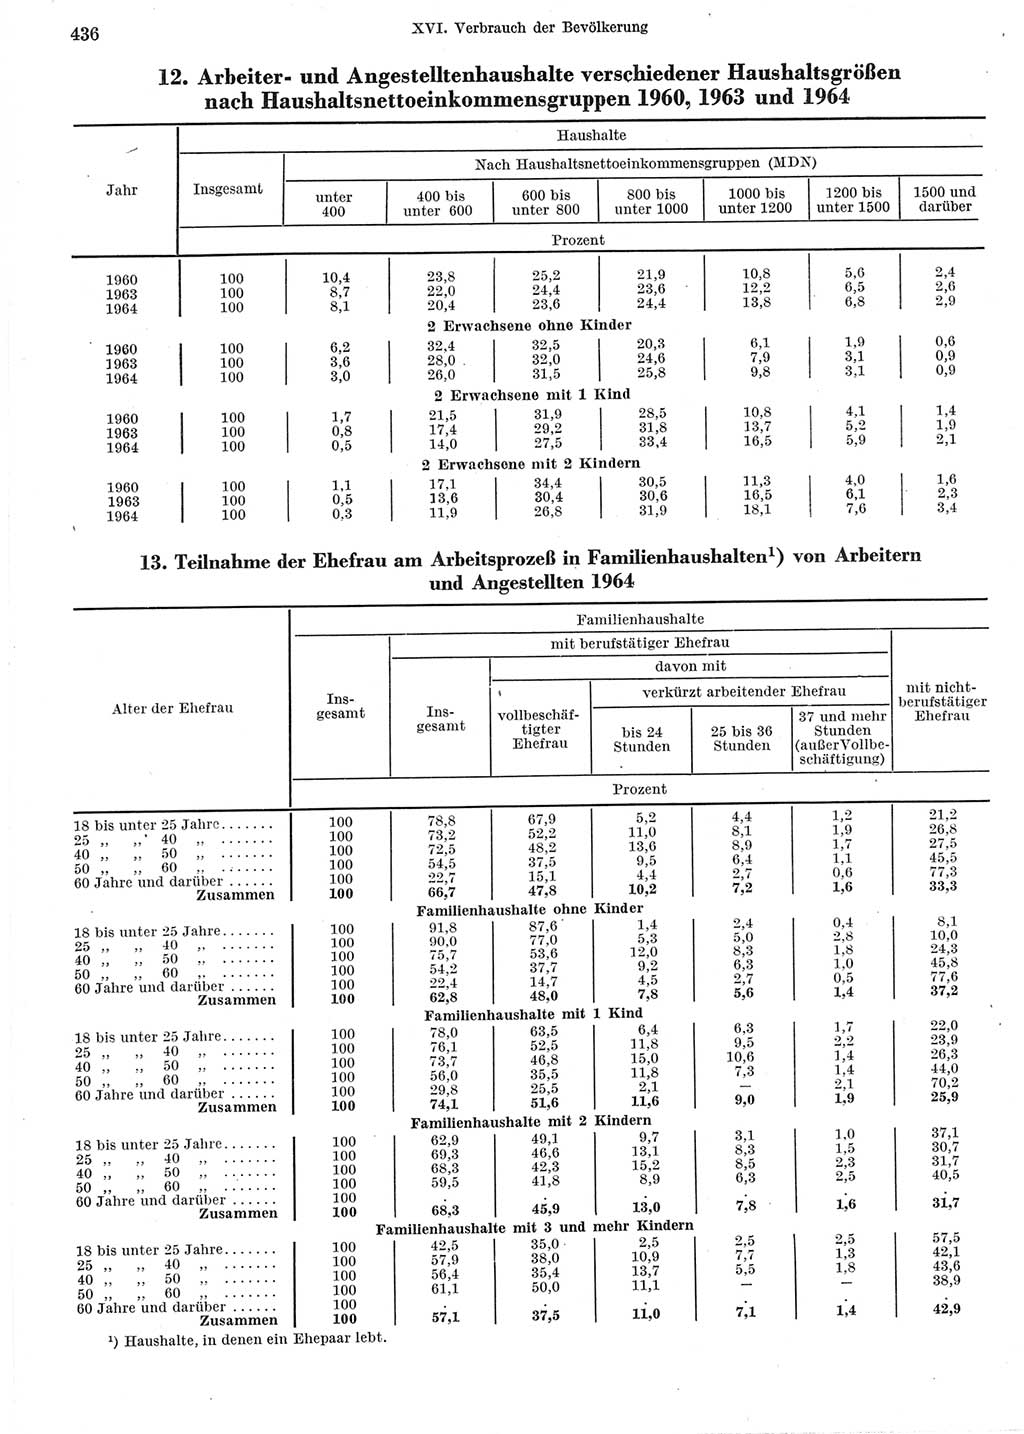 Statistisches Jahrbuch der Deutschen Demokratischen Republik (DDR) 1965, Seite 436 (Stat. Jb. DDR 1965, S. 436)